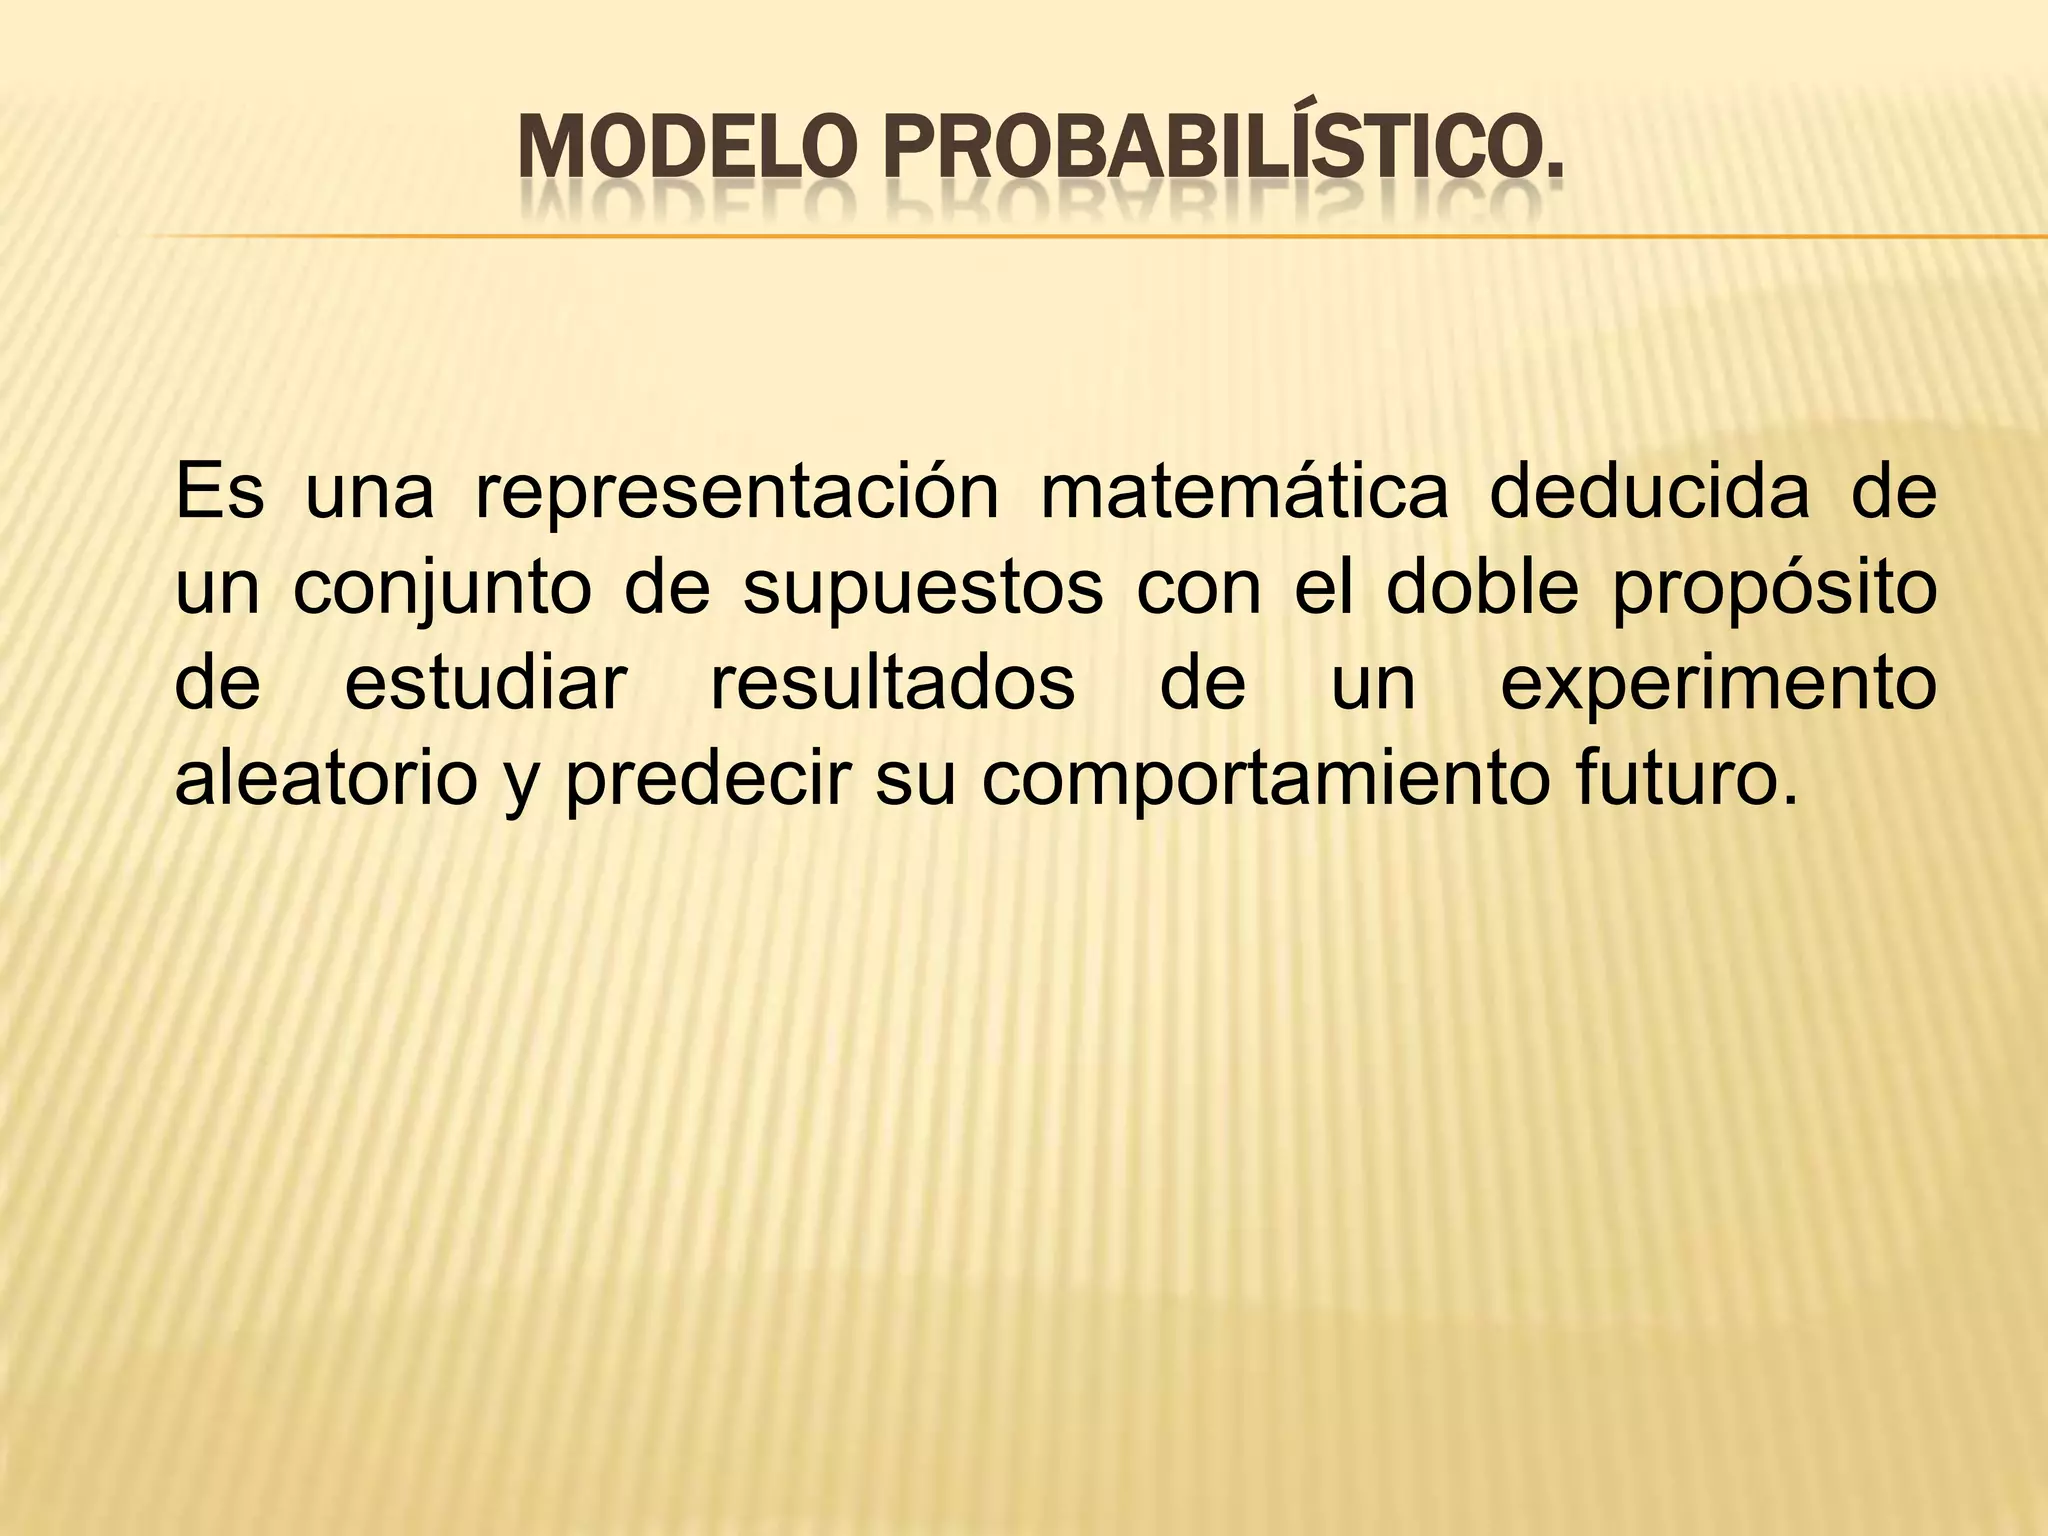 Modelo probabilistico